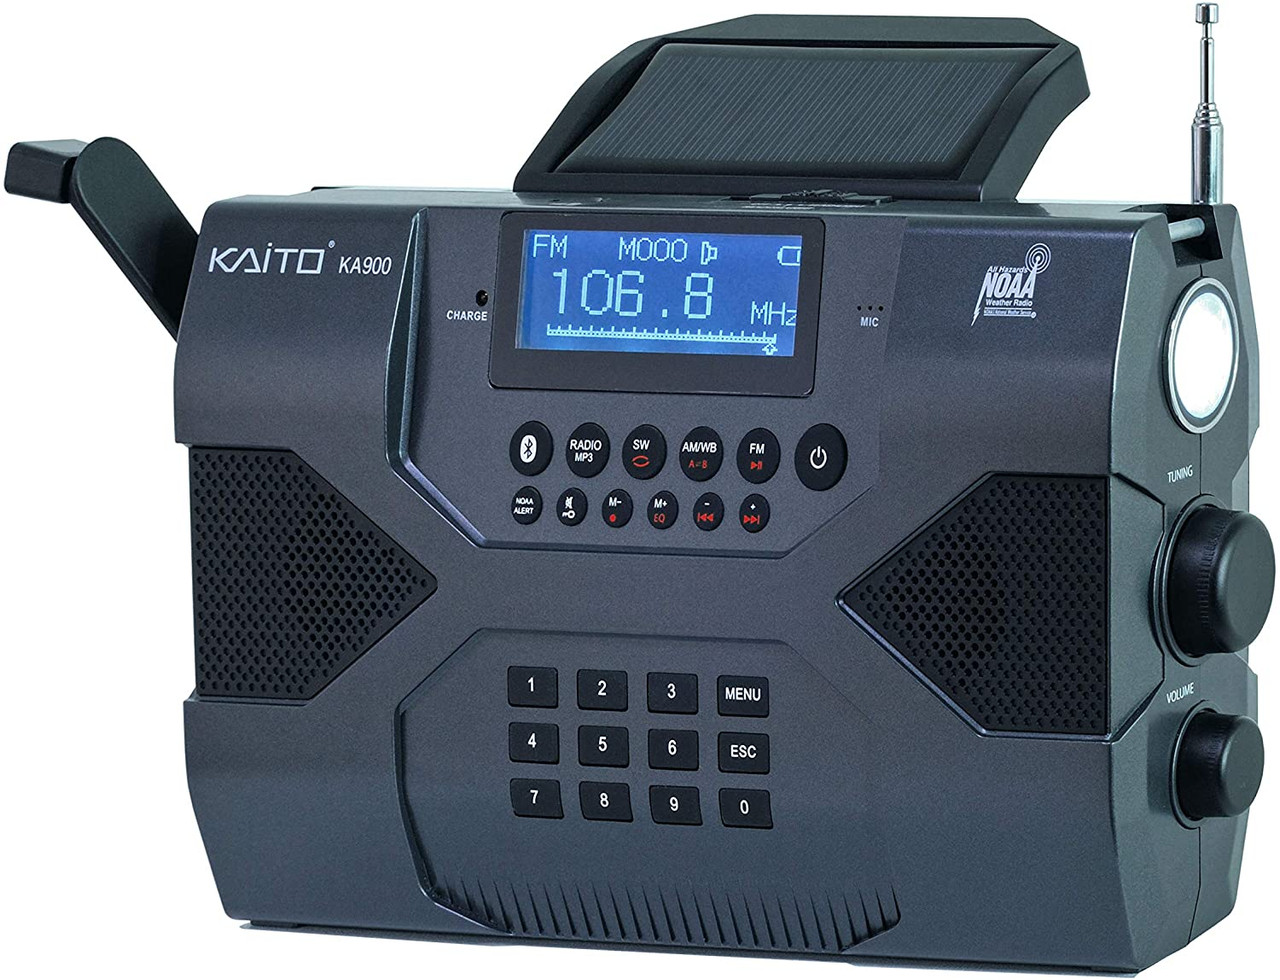 kaito emergency radio voyager max ka900 reviews